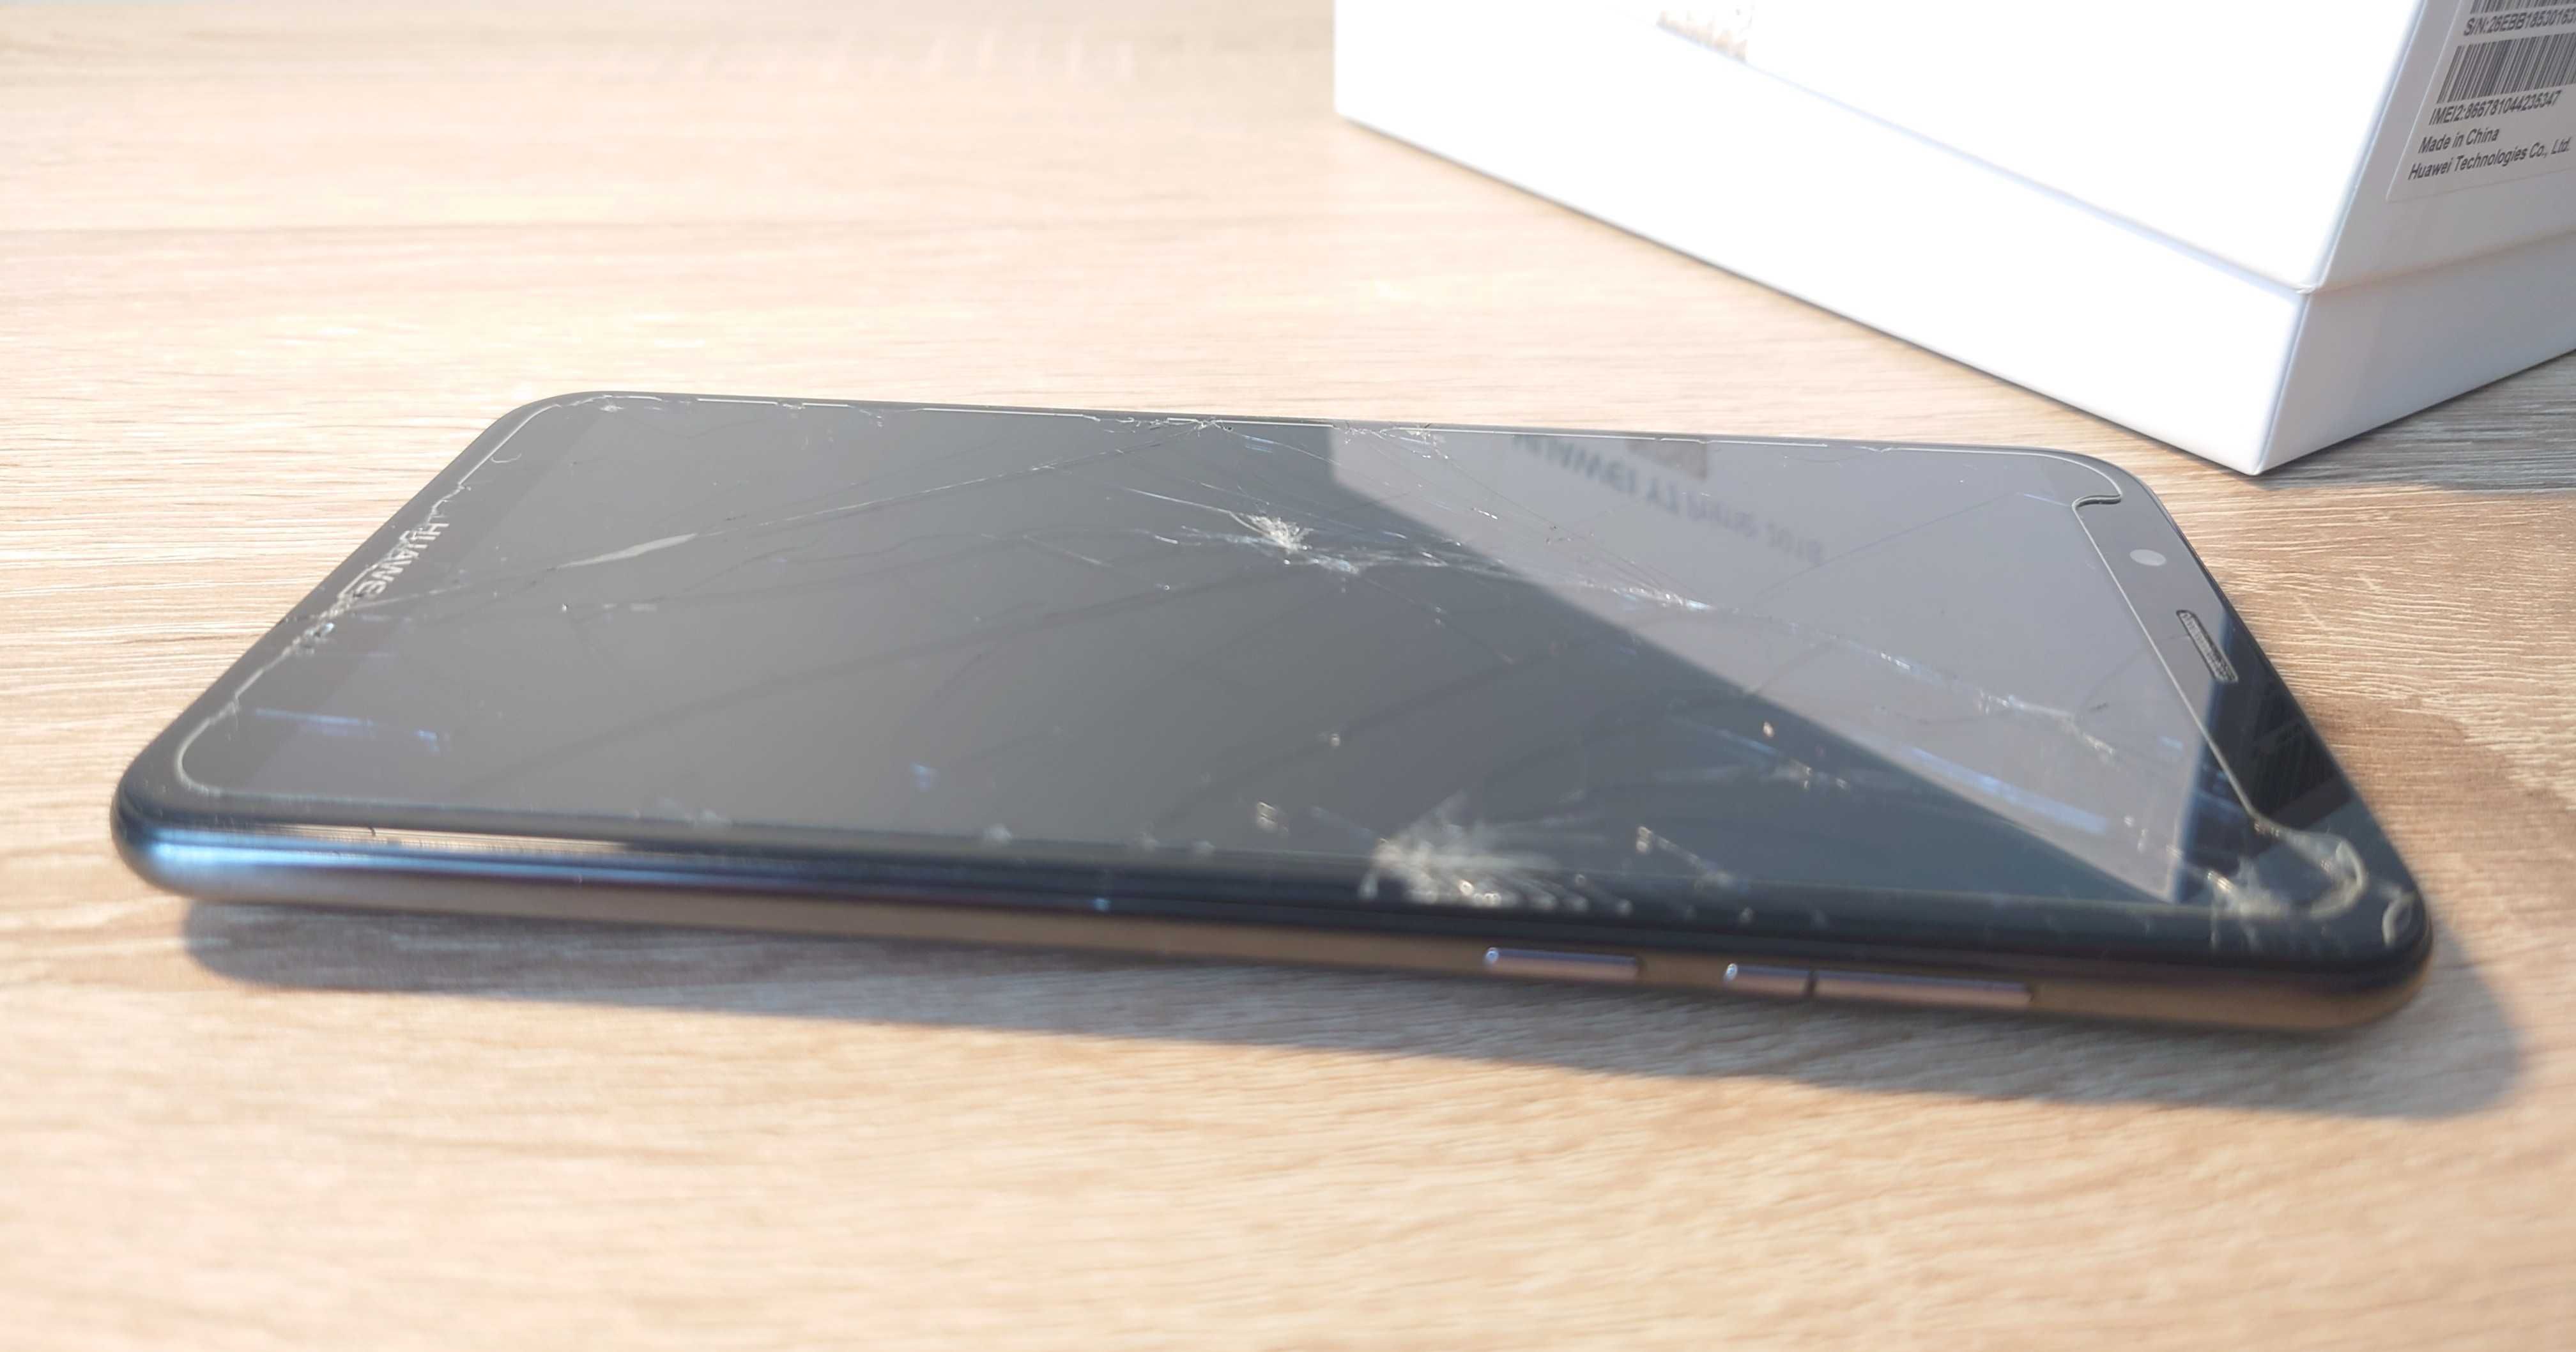 Smartfon HUAWEI Y7 PRIME 2018, uszkodzony wyświetlacz, czarny.